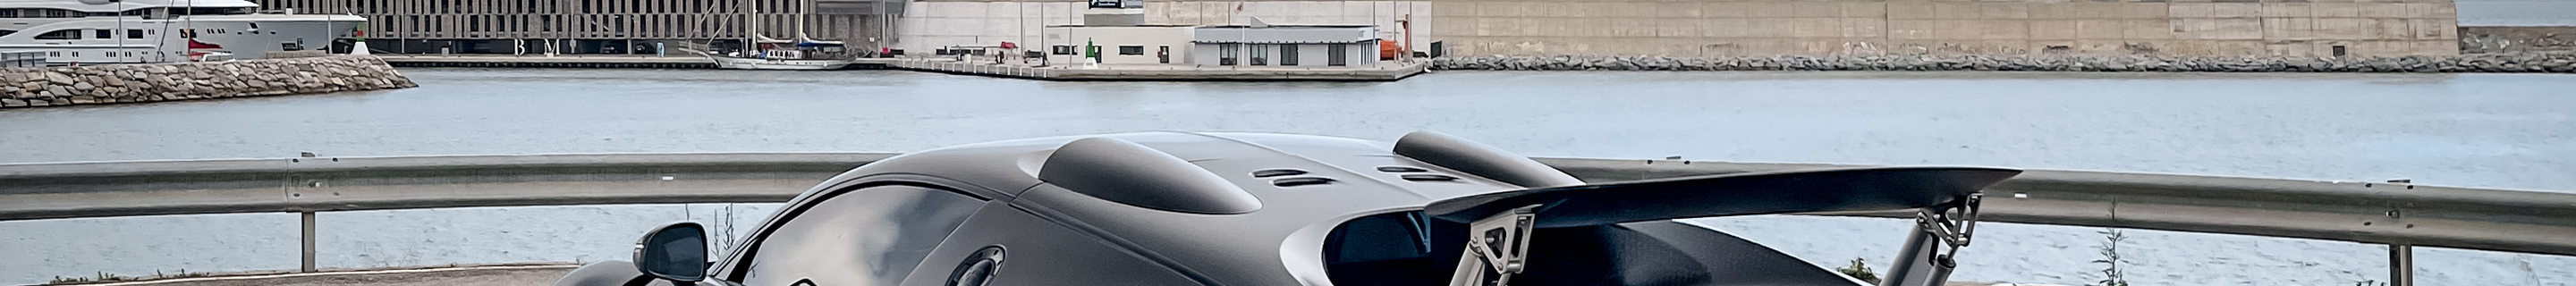 Bugatti Veyron 16.4 Mansory Vivere